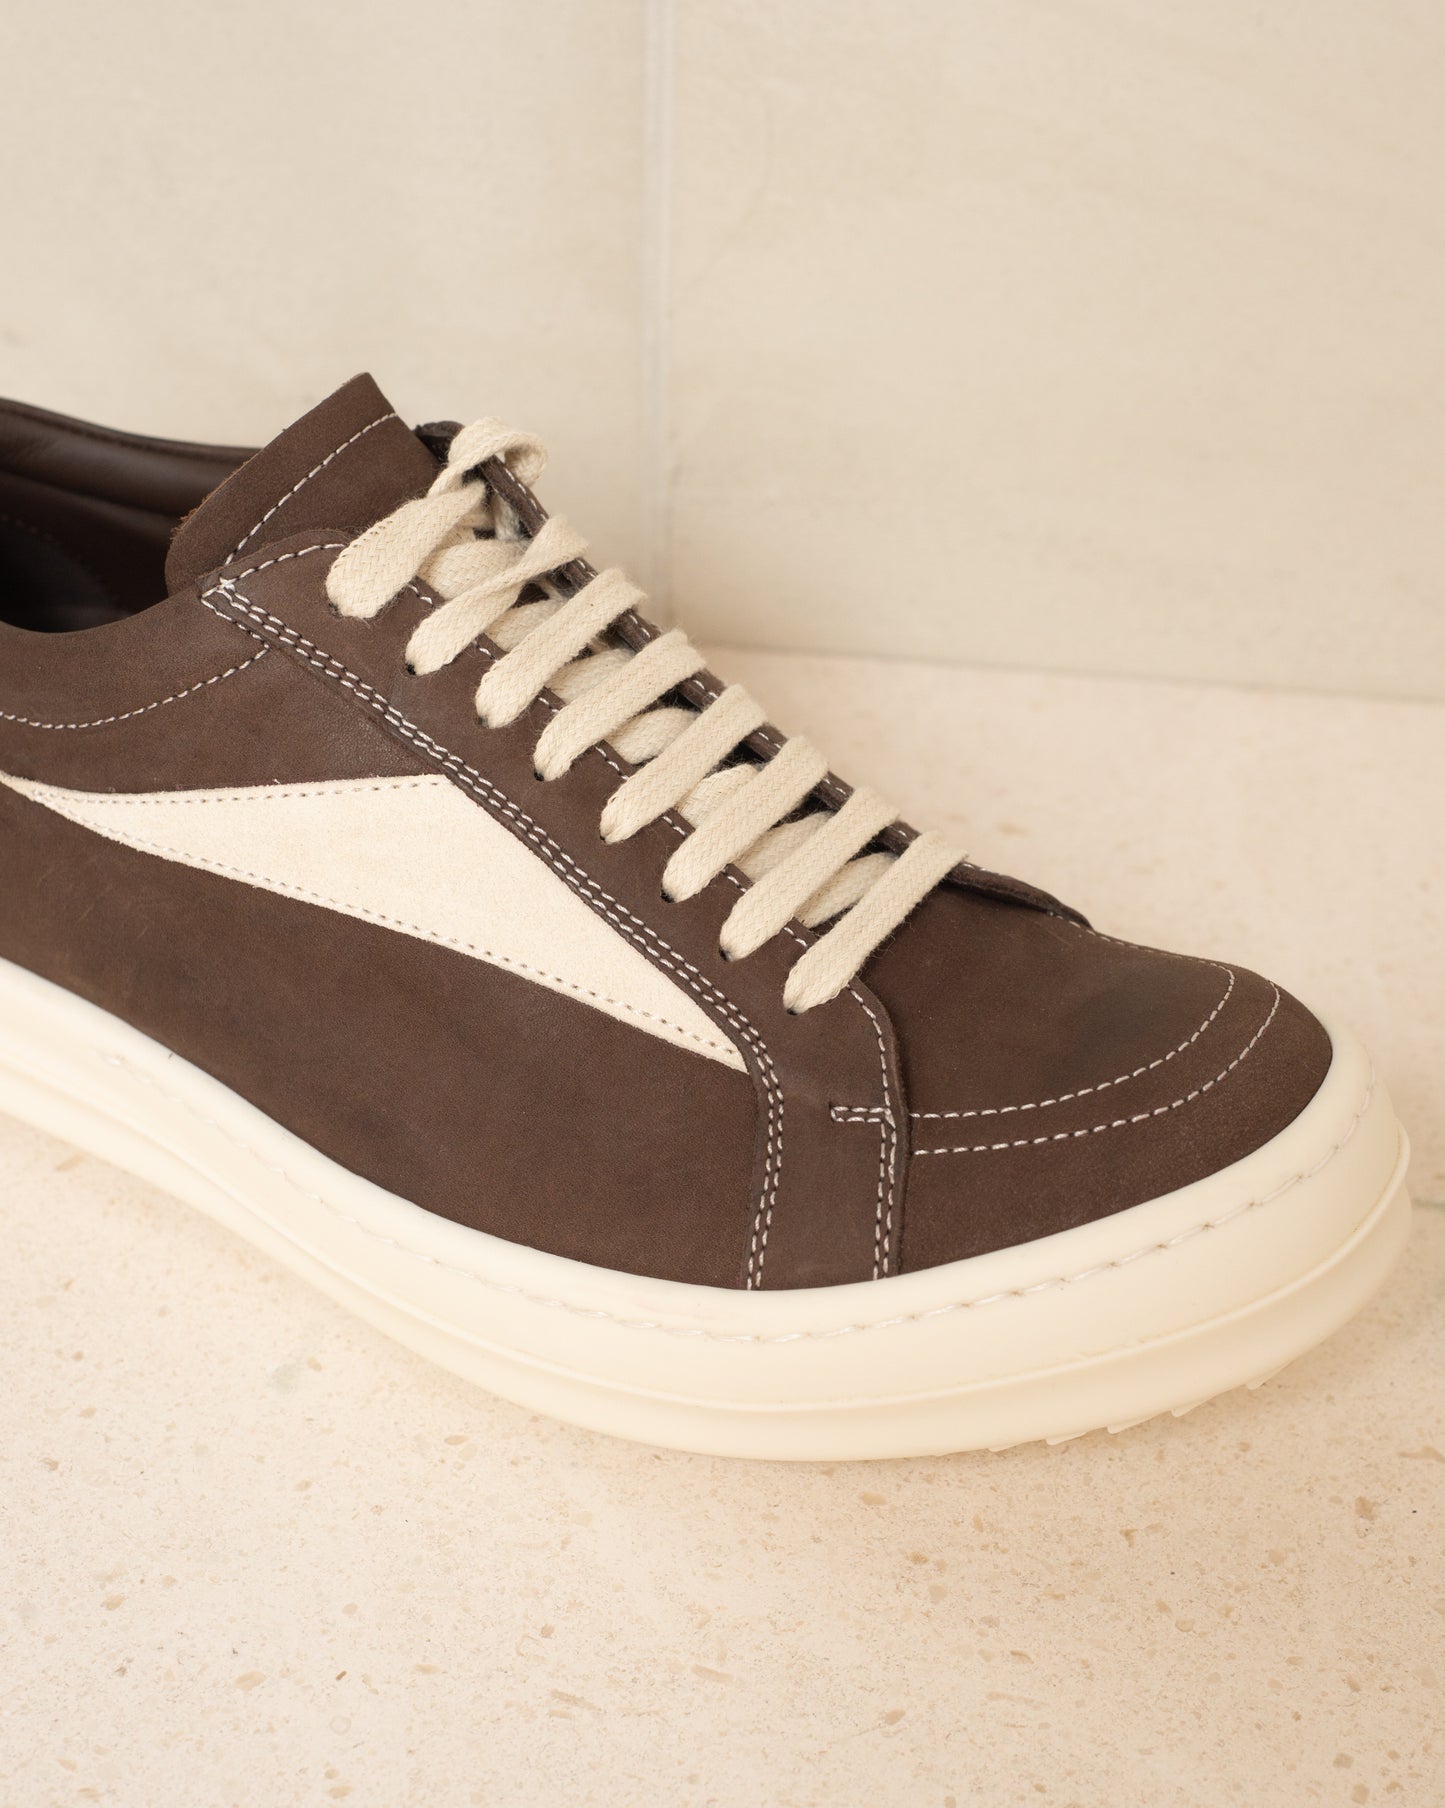 Brown Vintage Leather Sneakers